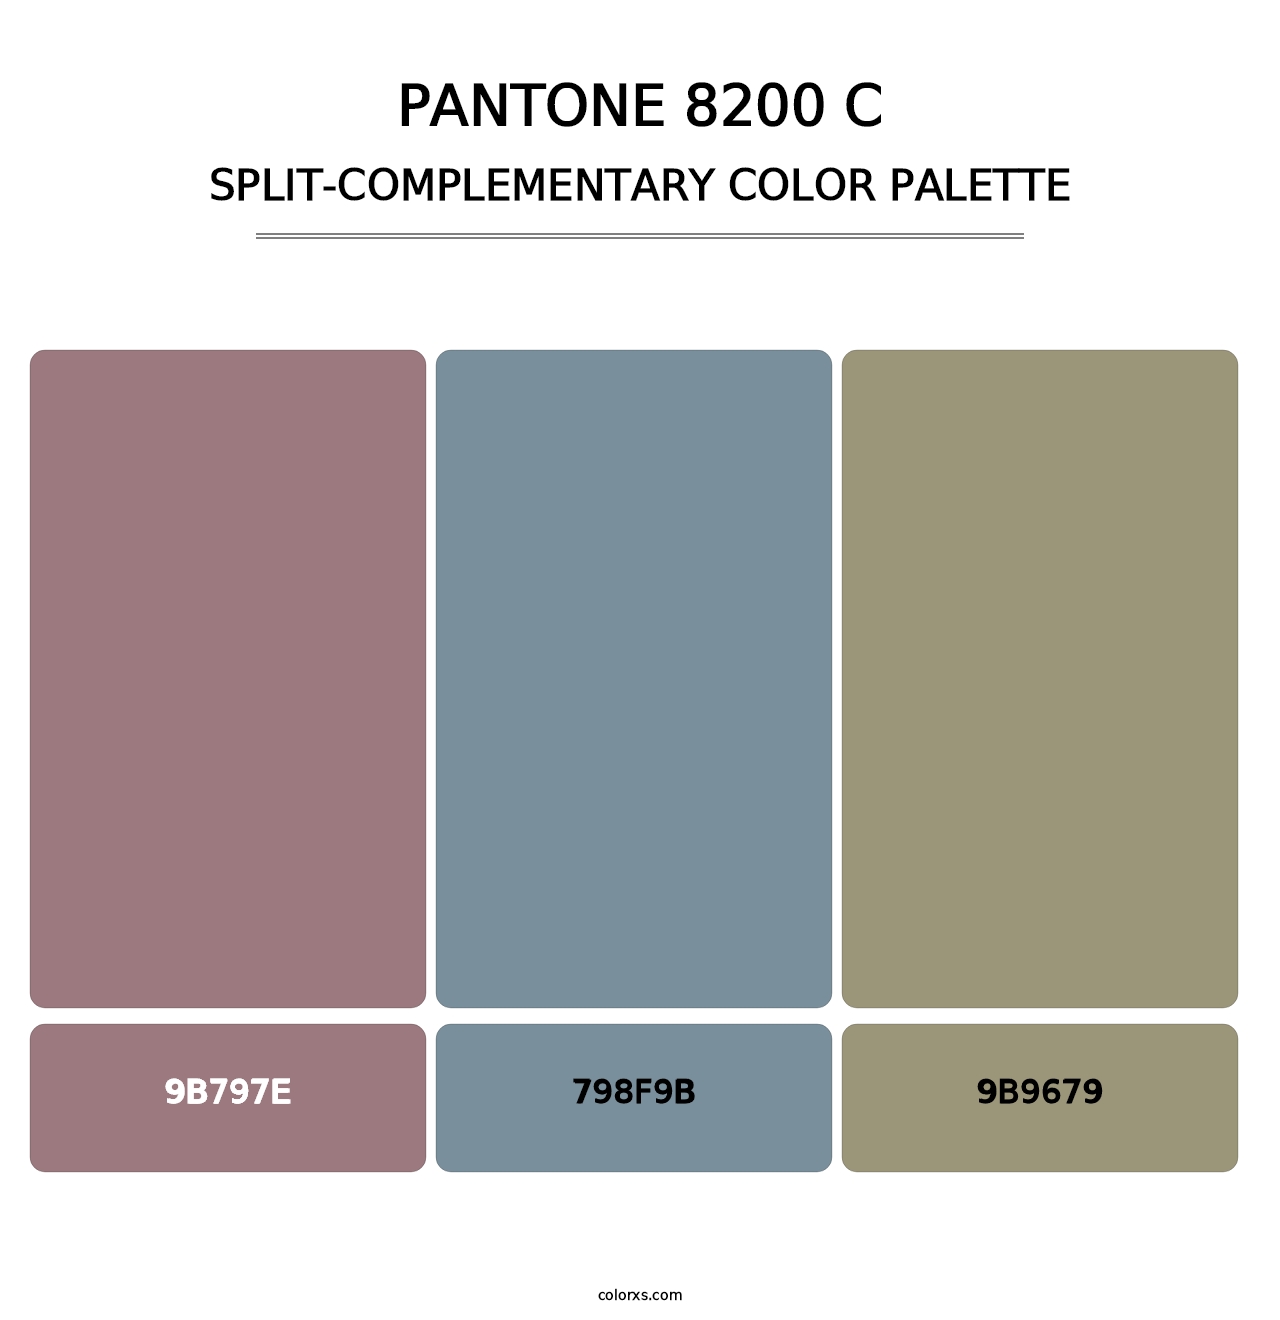 PANTONE 8200 C - Split-Complementary Color Palette